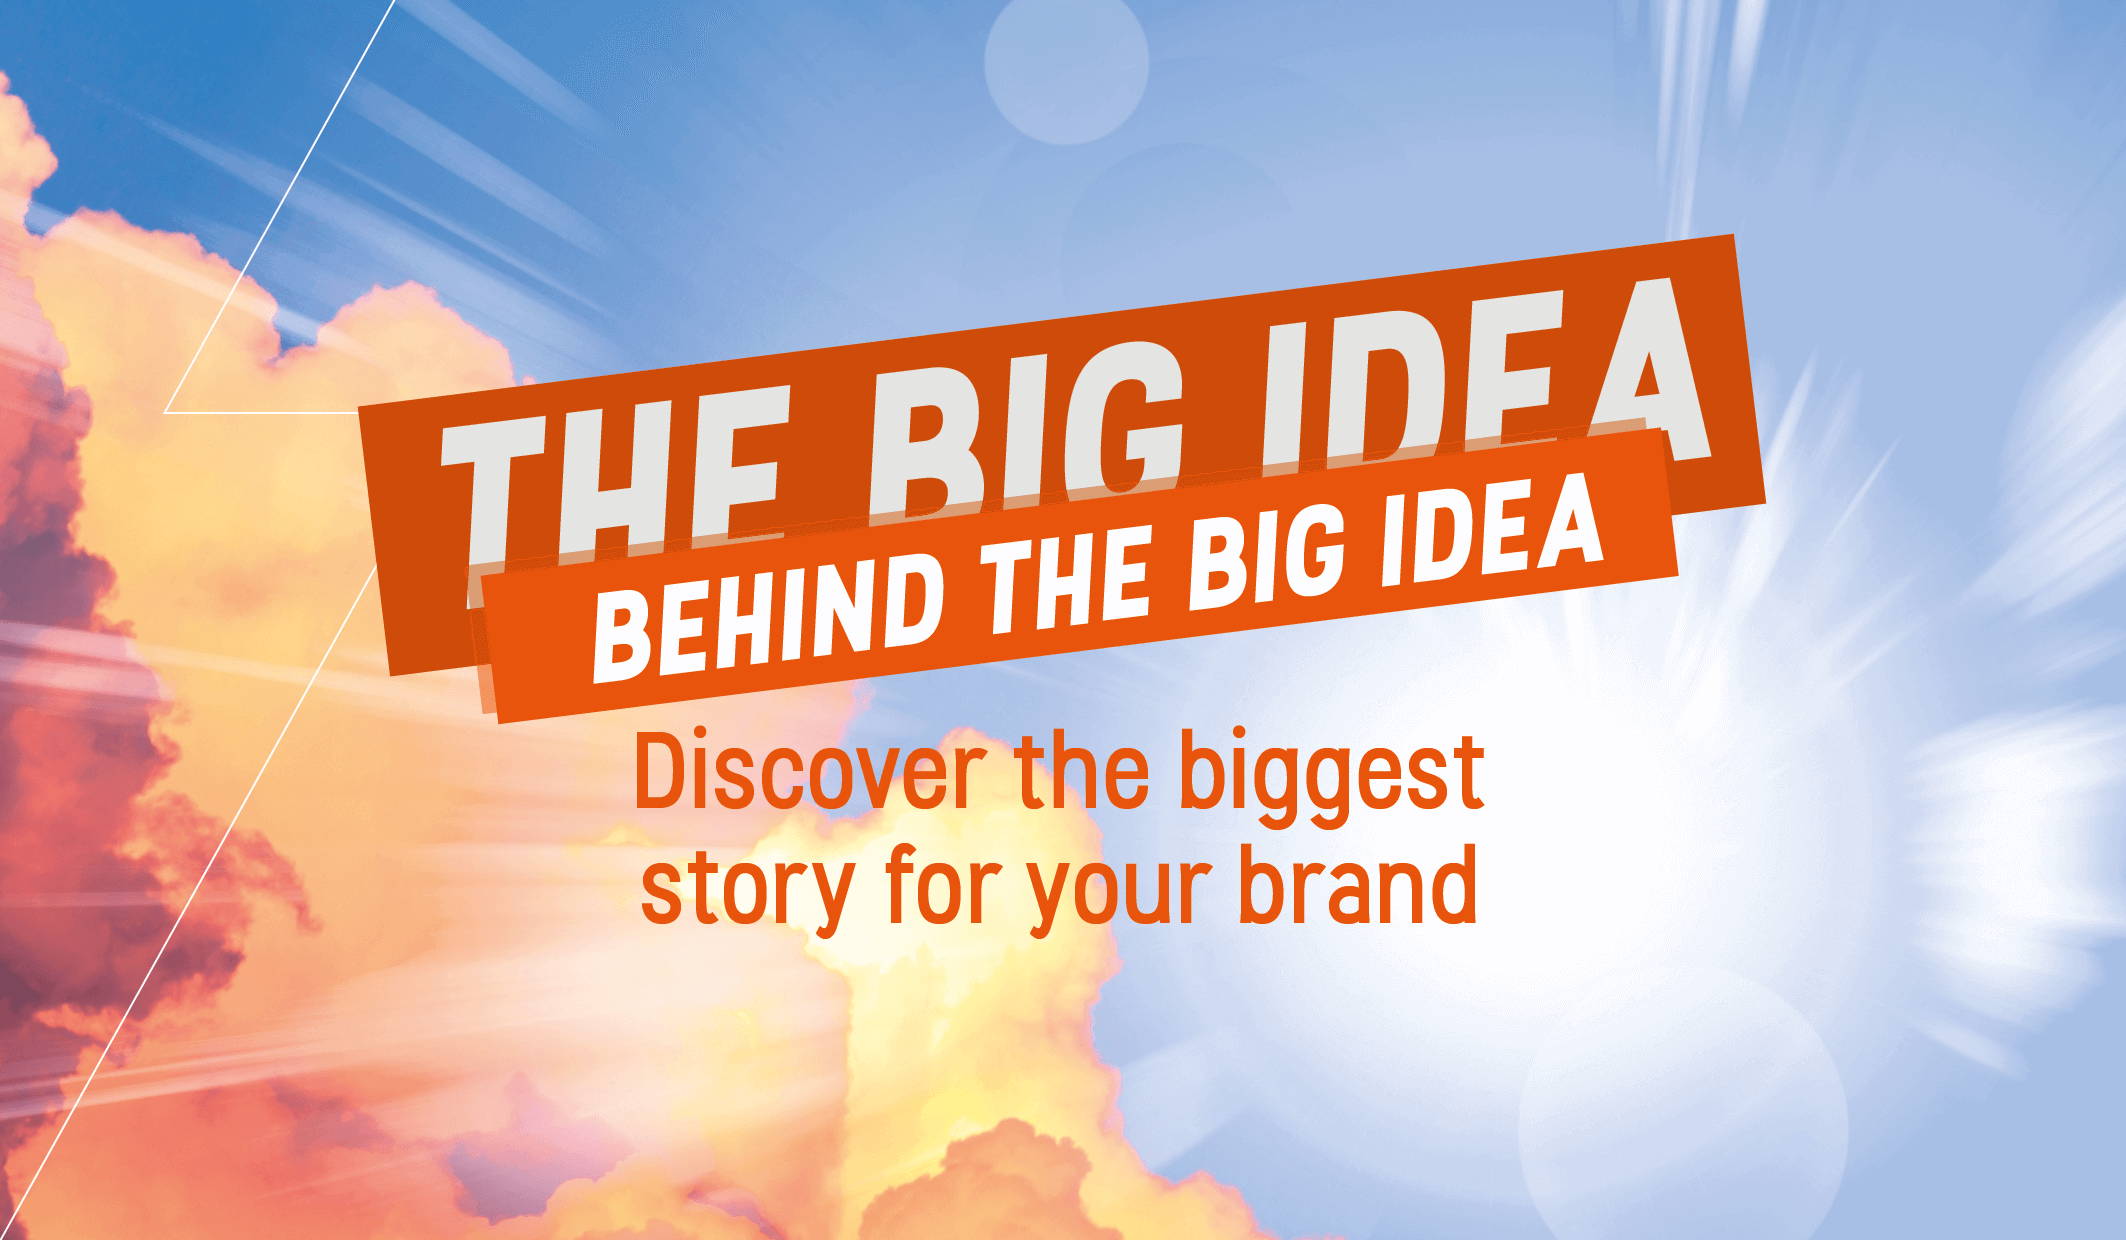 The big idea behind the big idea